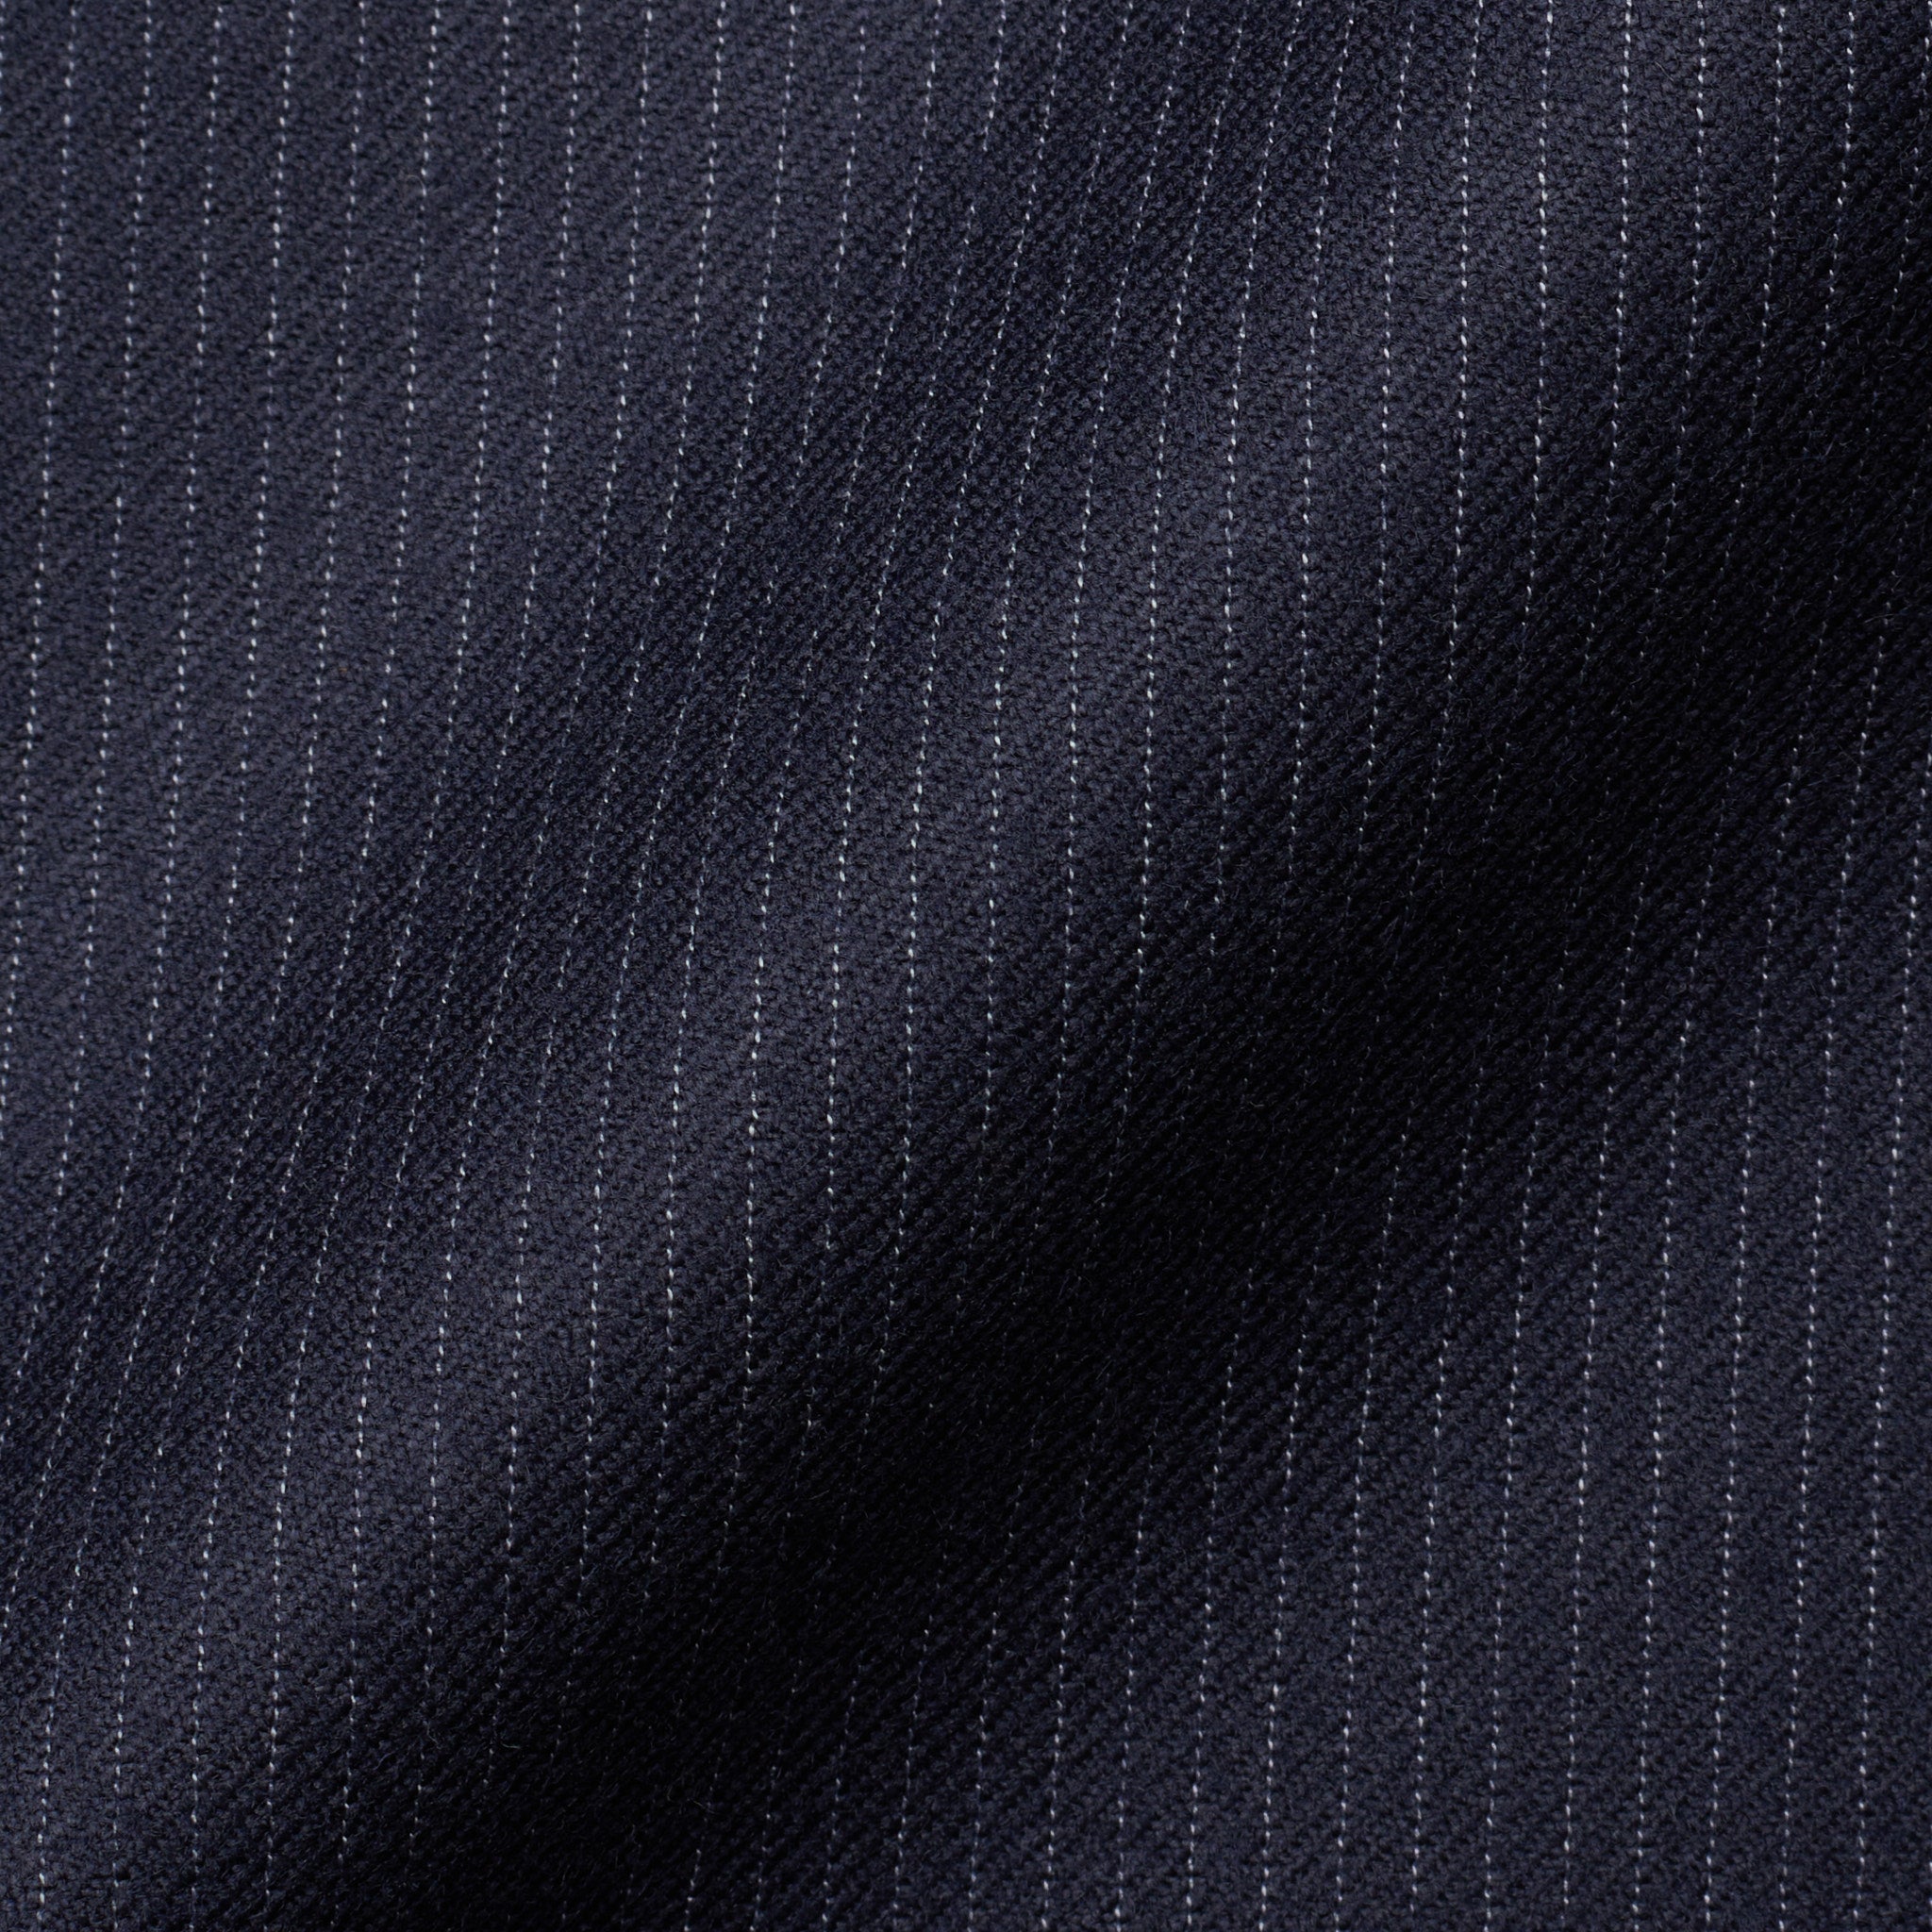 RUBINACCI LH Hand Made Bespoke Blue Striped Wool Flannel Jacket EU 58 NEW US 48 RUBINACCI